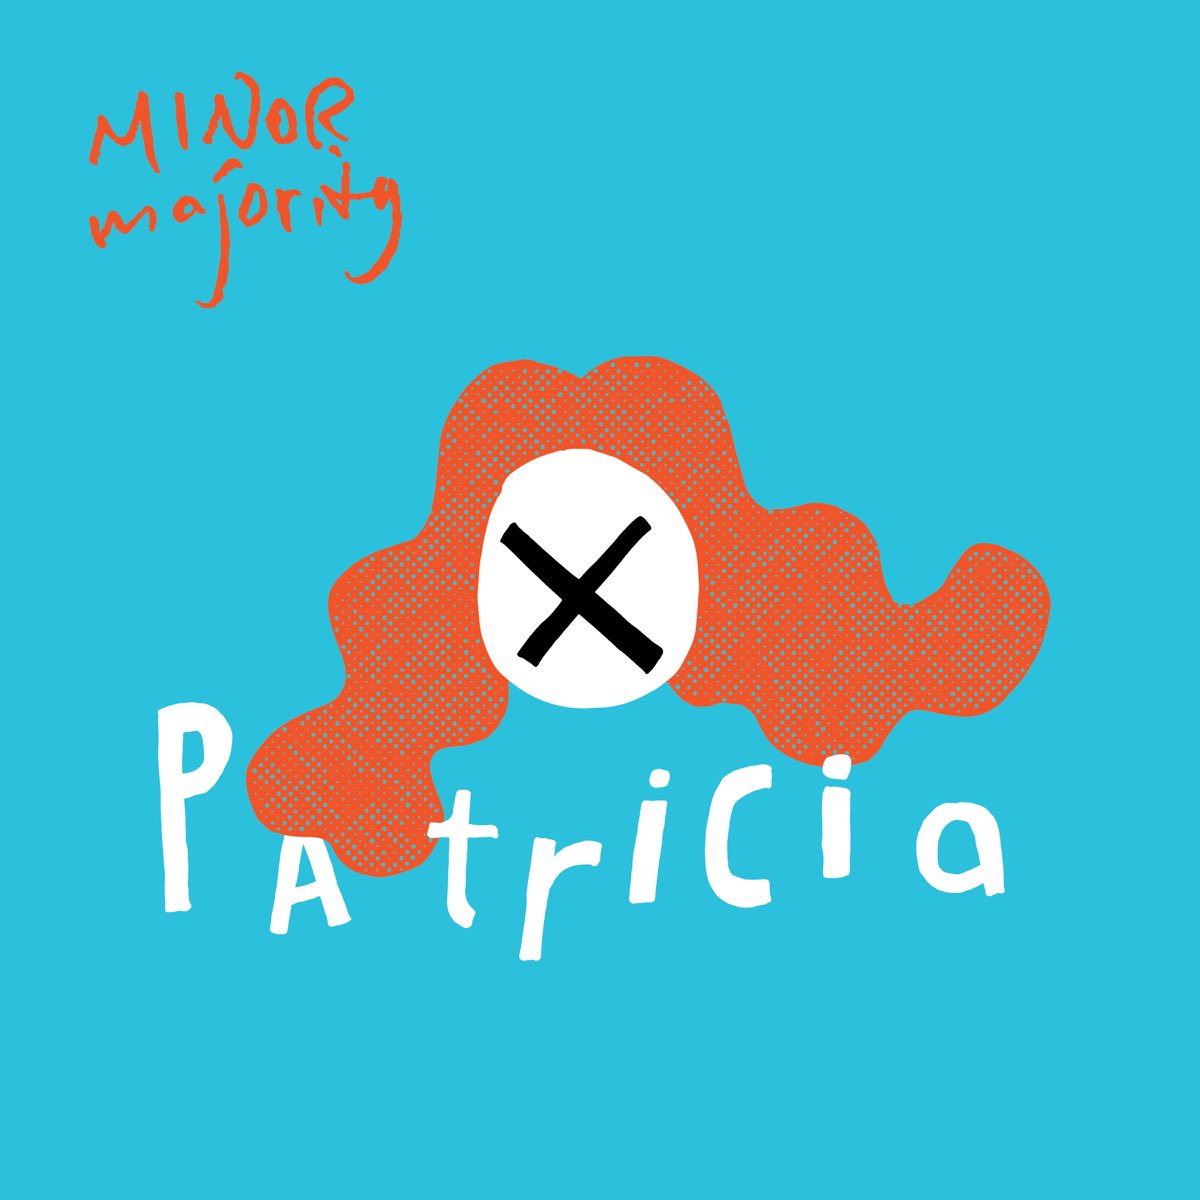 Patricia Major. Minor majority видео.